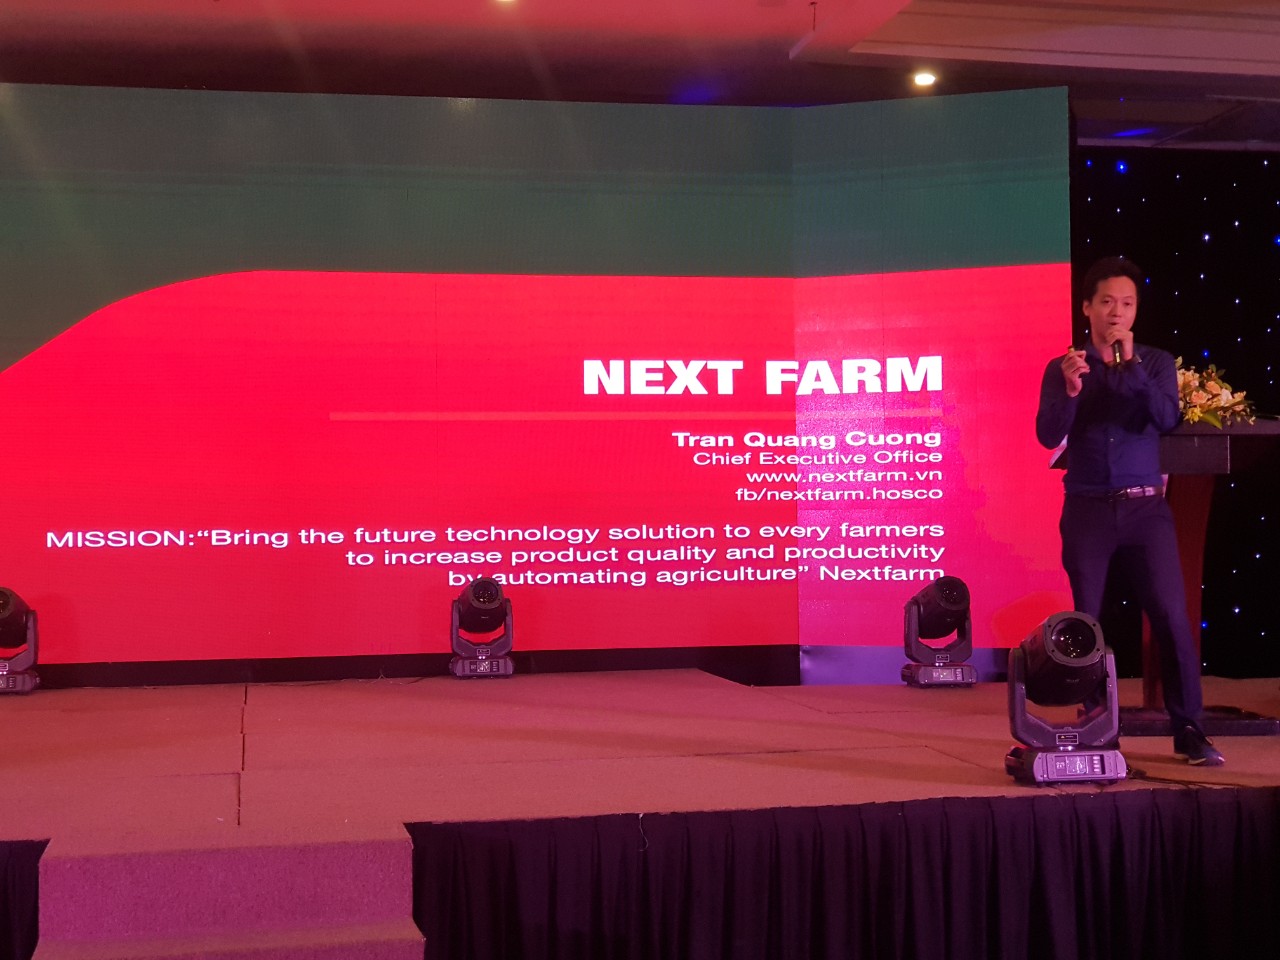 CEO PosX thuyết trình giới thiệu về giải pháp chuyển đổi số cho các công ty hoạt động trong lĩnh vực nông nghiệp tại sự kiện Whise